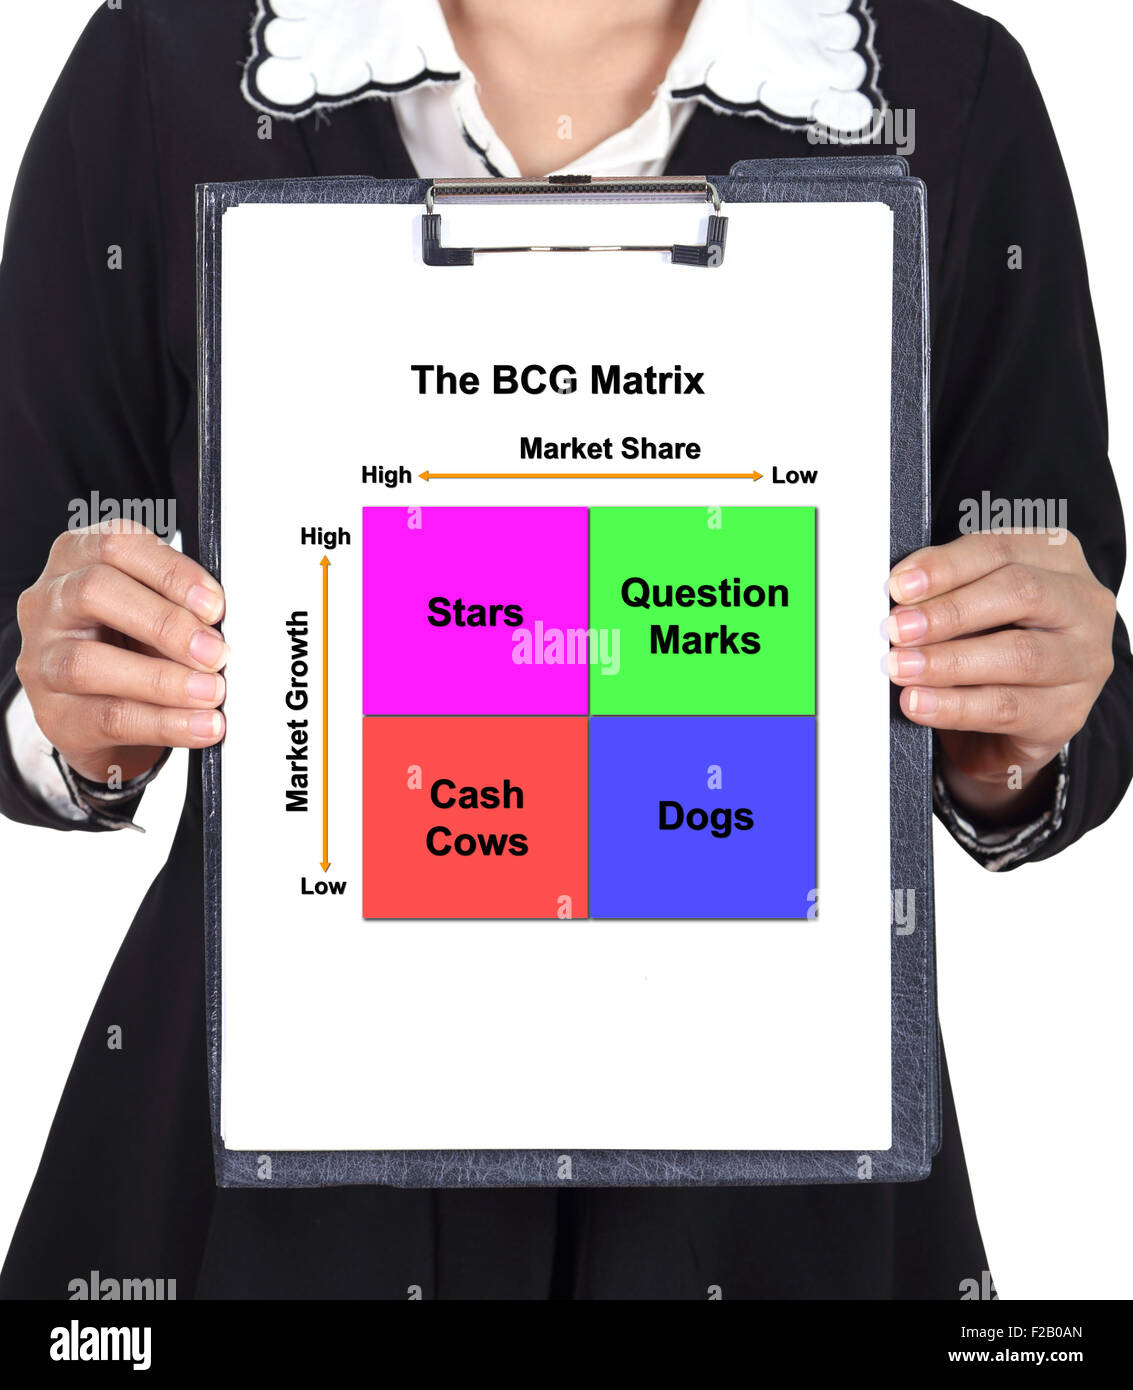 Business Woman holding un presse-papiers avec la carte de la matrice BCG (concept de commercialisation) Banque D'Images